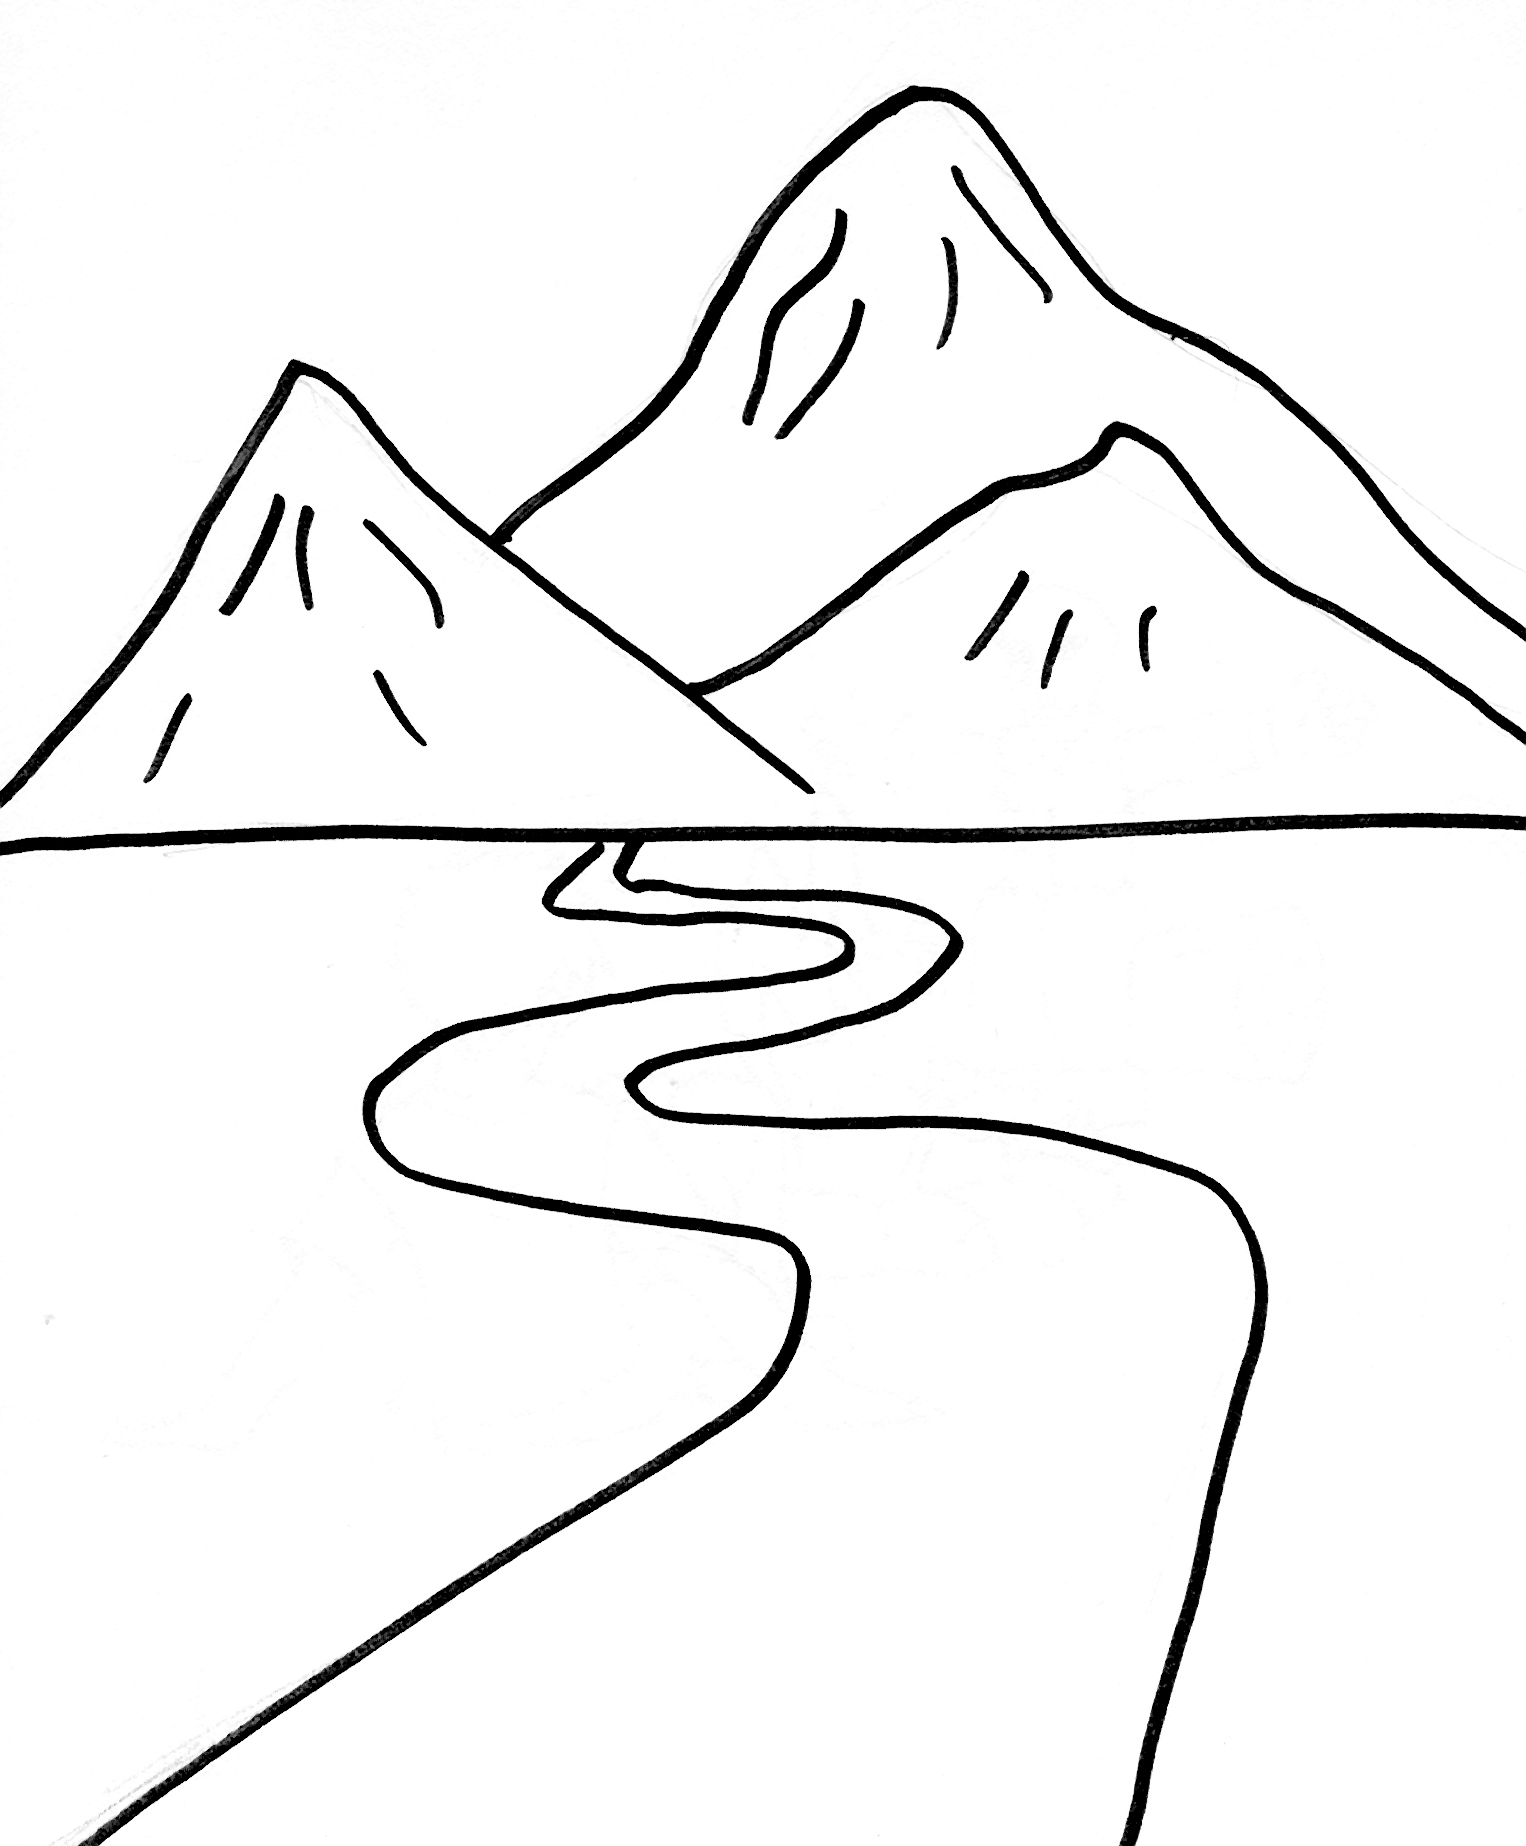 Dessins Montagne (Nature) à colorier – Page 2 – Coloriages à imprimer